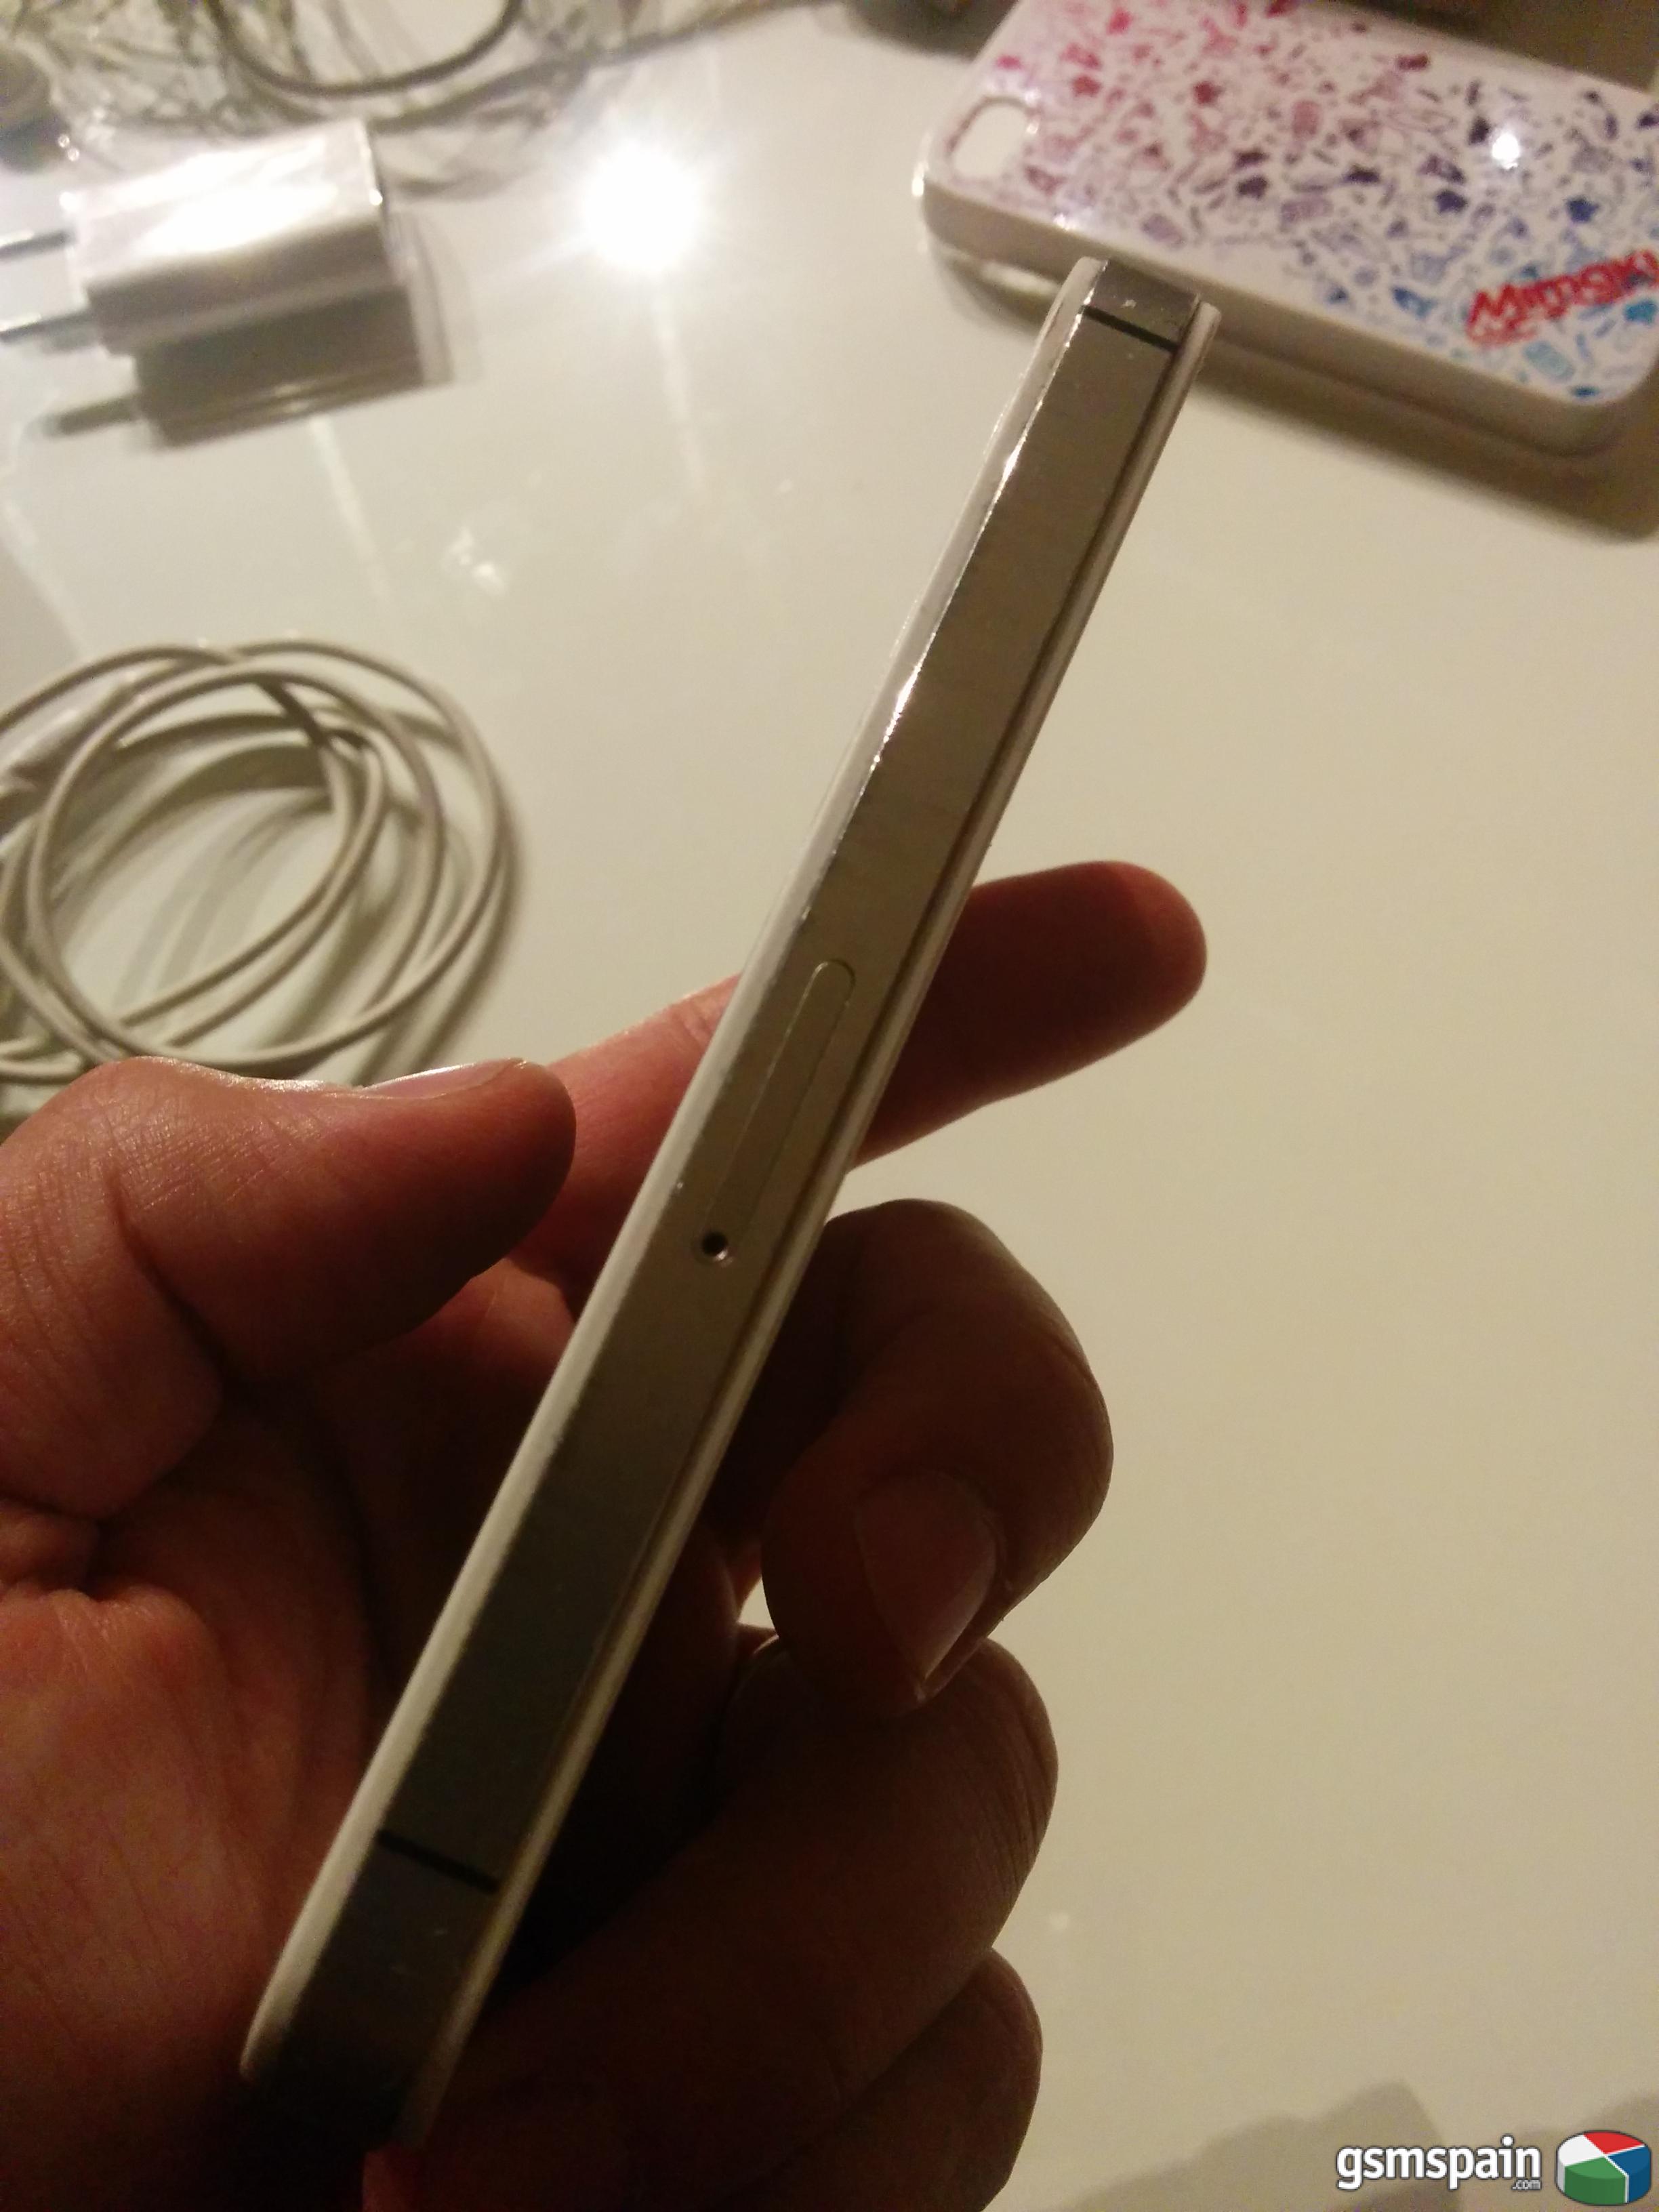 [VENDO] Iphone 4S 16gb blanco libre con caja original y accesorios Barcelona provincia